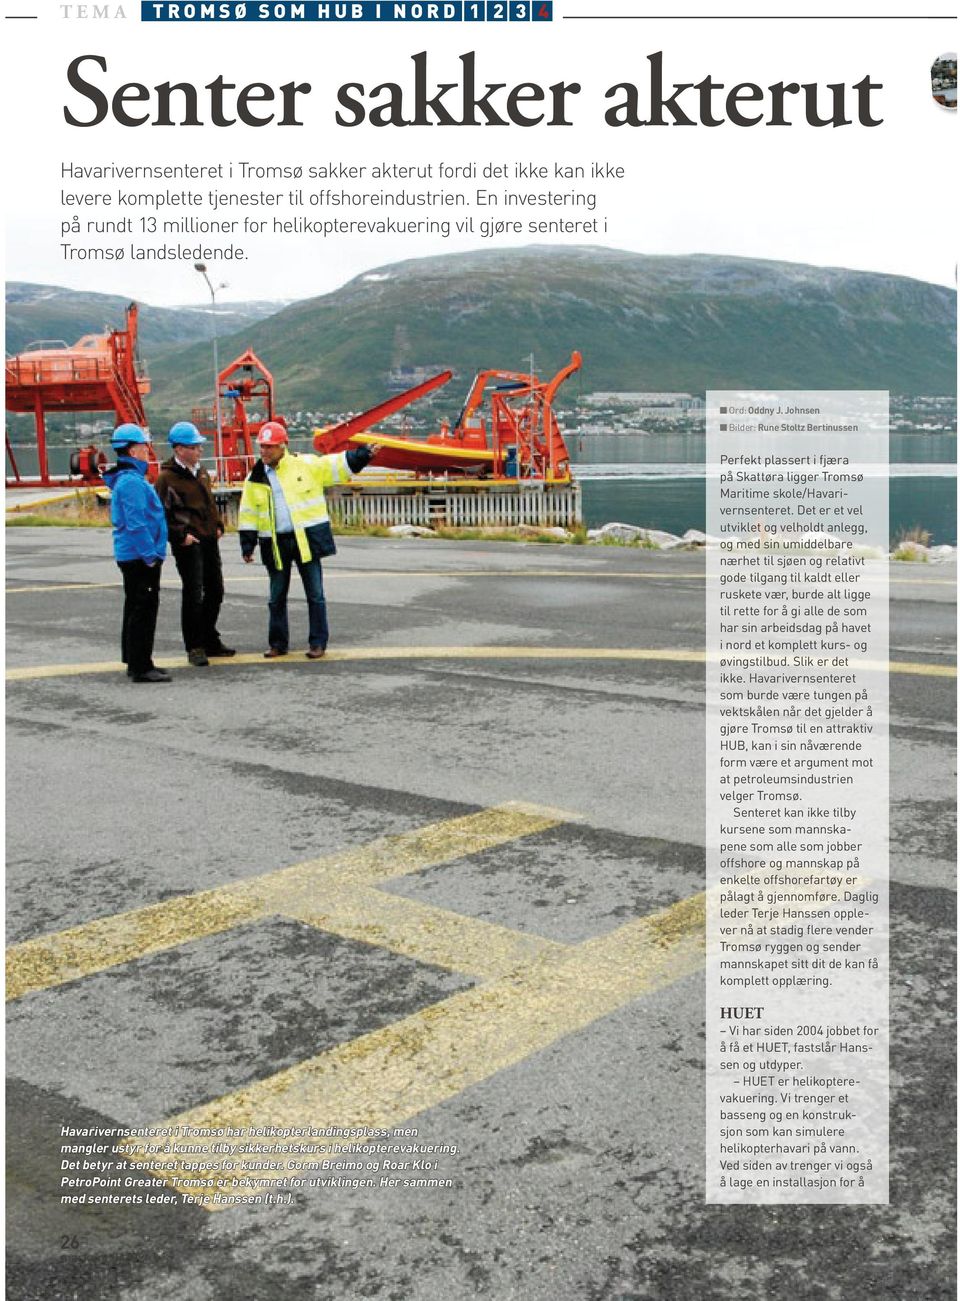 Johnsen Bilder: Rune Stoltz Bertinussen Perfekt plassert i fjæra på Skattøra ligger Tromsø Maritime skole/havarivernsenteret.